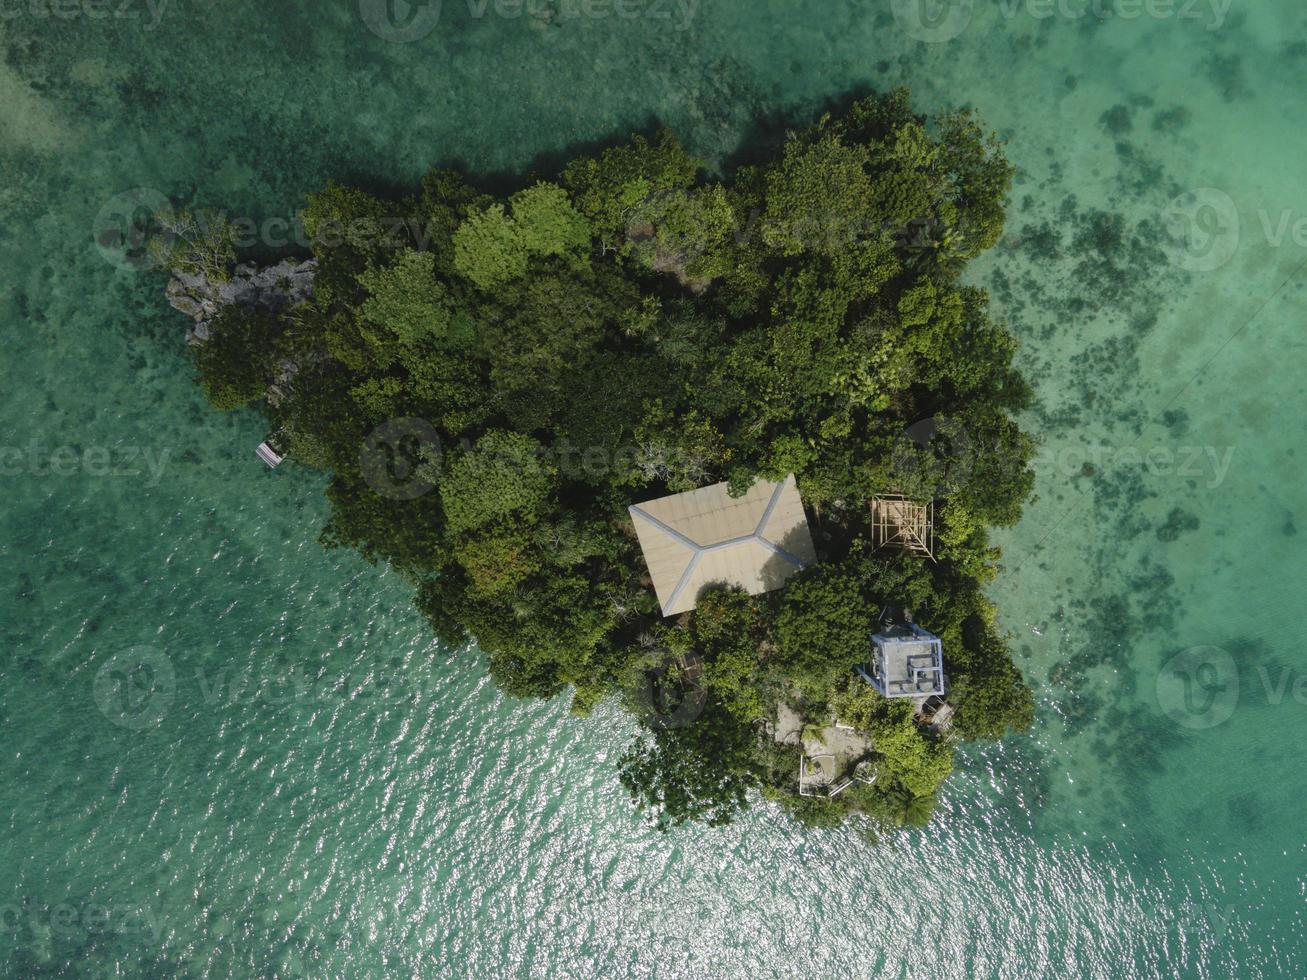 vista aérea de muchas islas pequeñas en maluku, indonesia foto